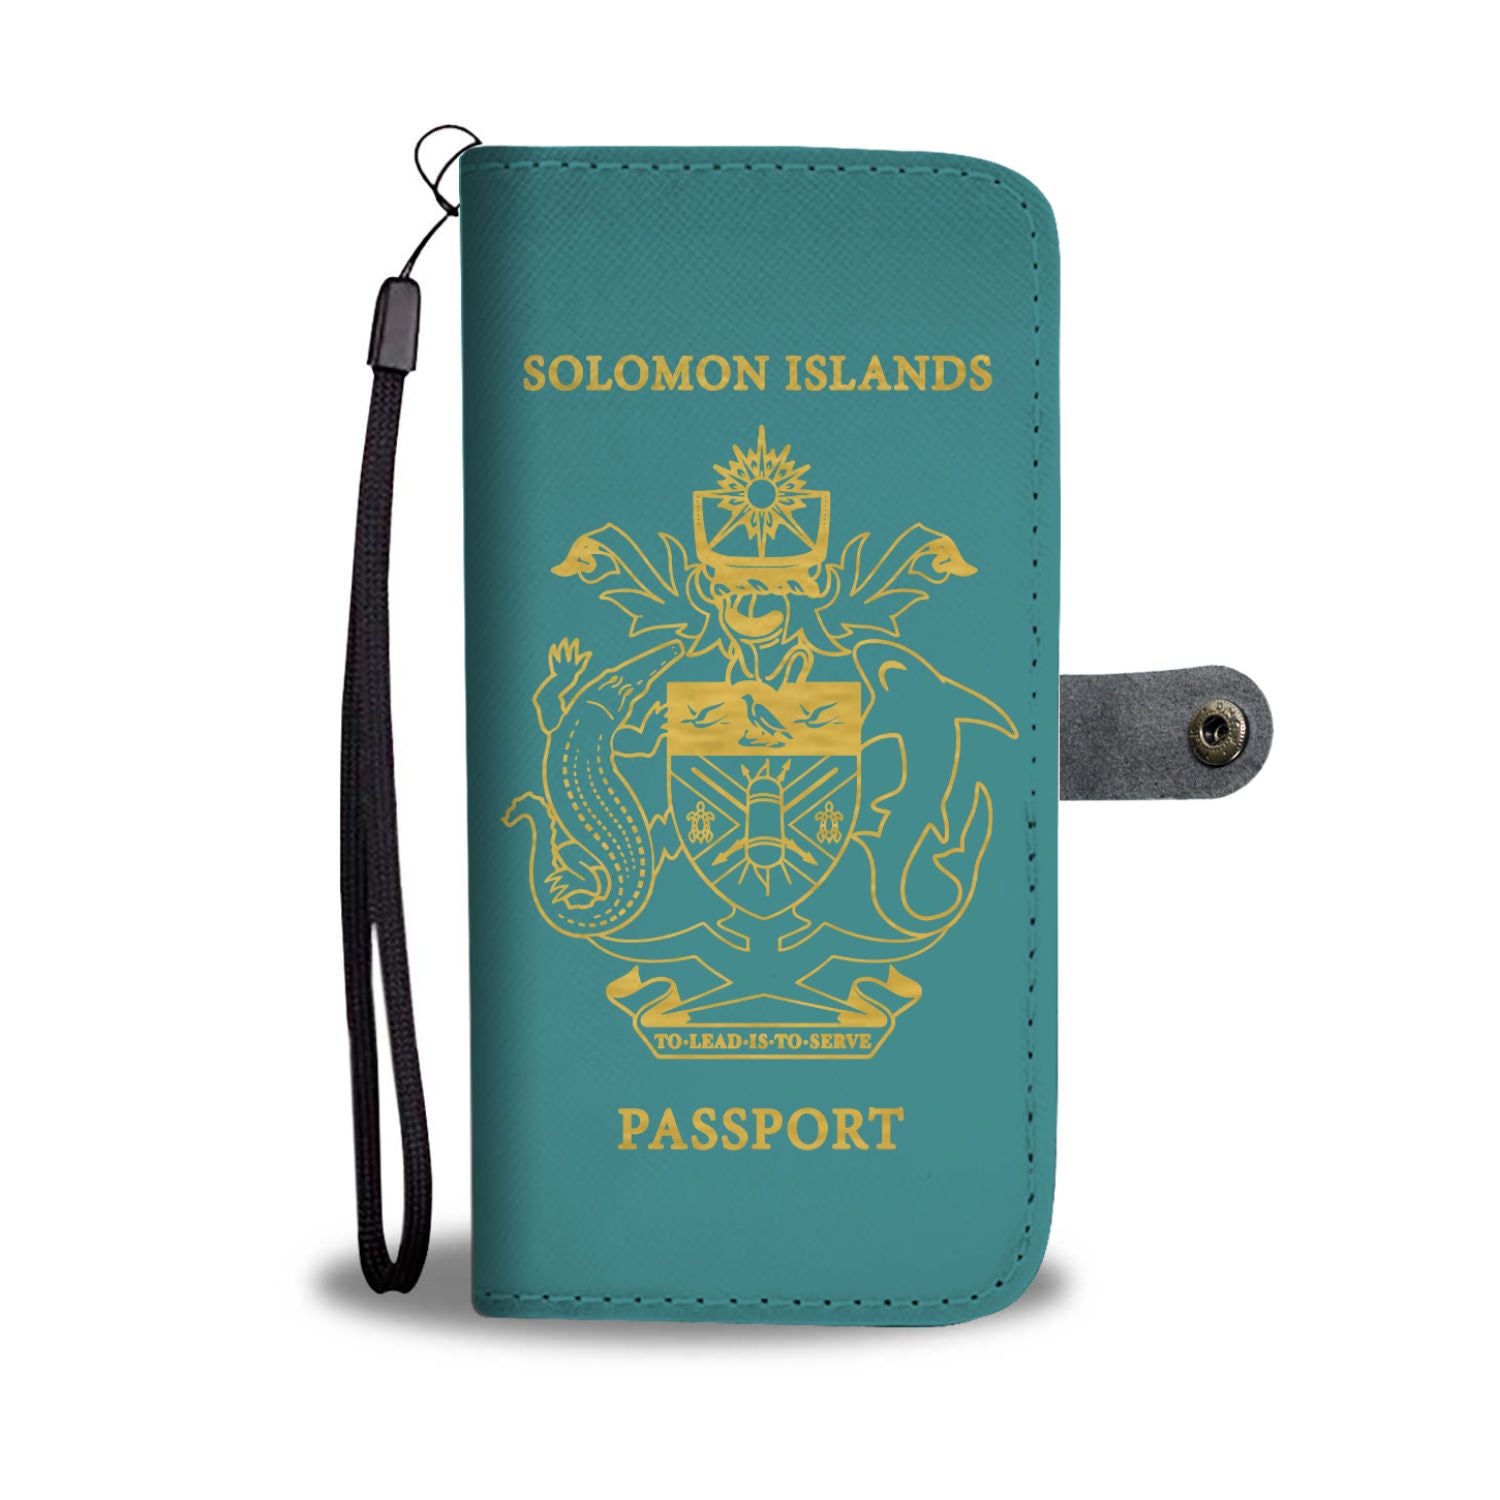 Solomon Islands Wallet Phone Case - Passport Version - Polynesian Pride